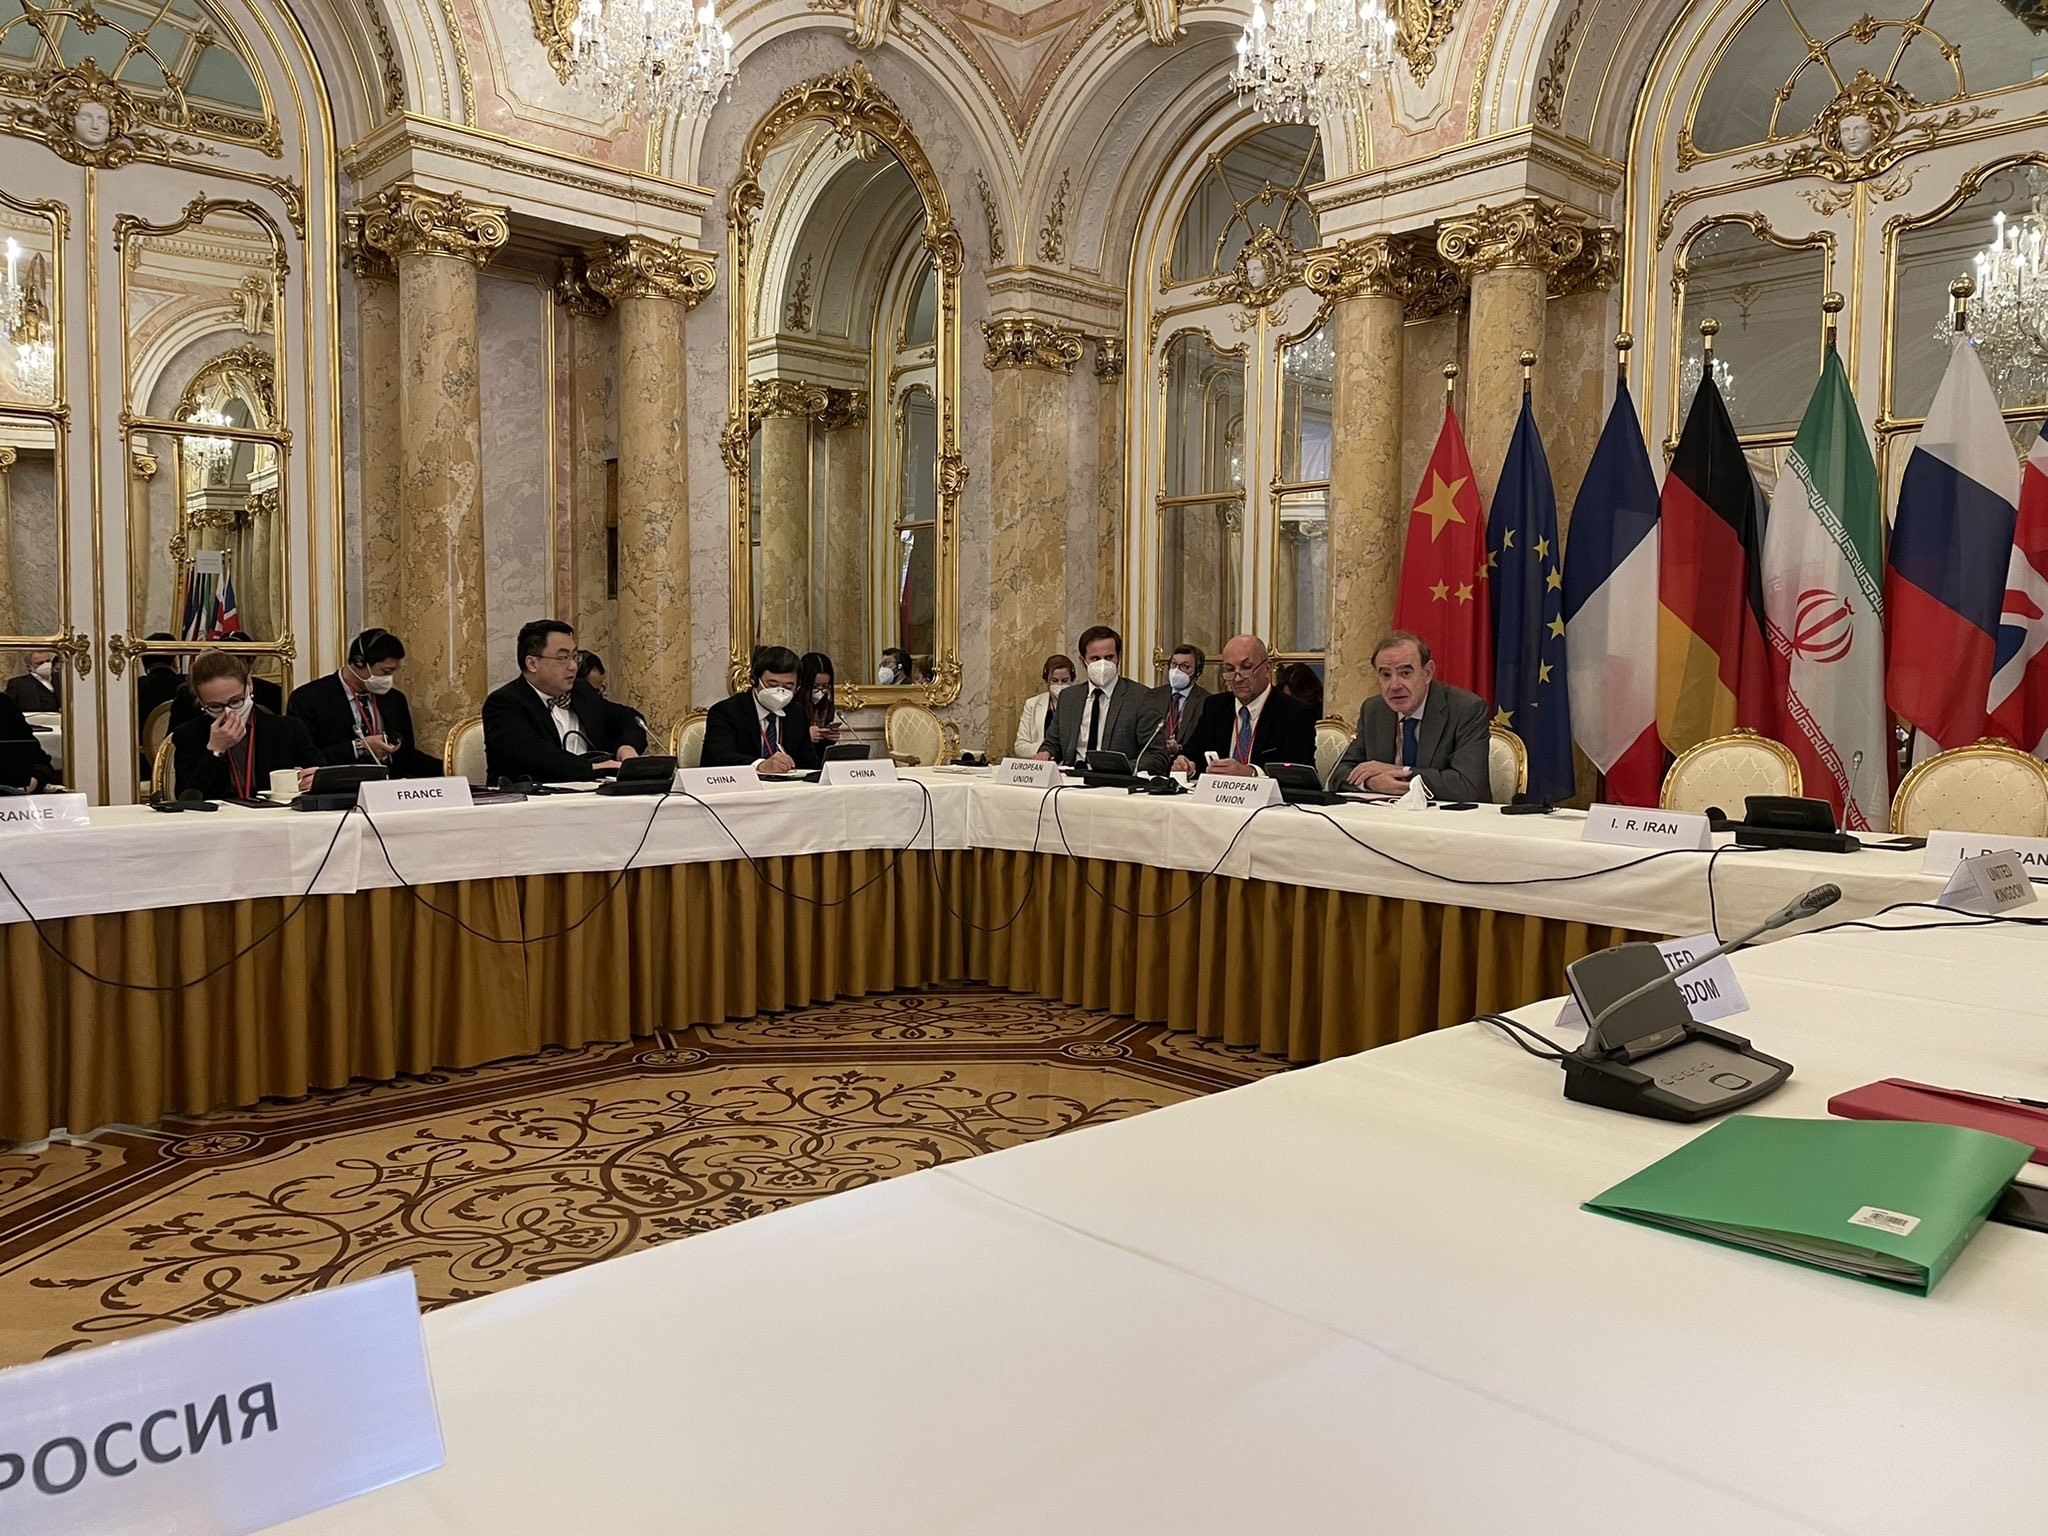 بدأت الجولة السابعة من مفاوضات فيينا بمشاركة المفوضية الأوروبية، التي تتوسط في الحوار، وروسيا والصين وألمانيا وبريطانيا وفرنسا وإيران